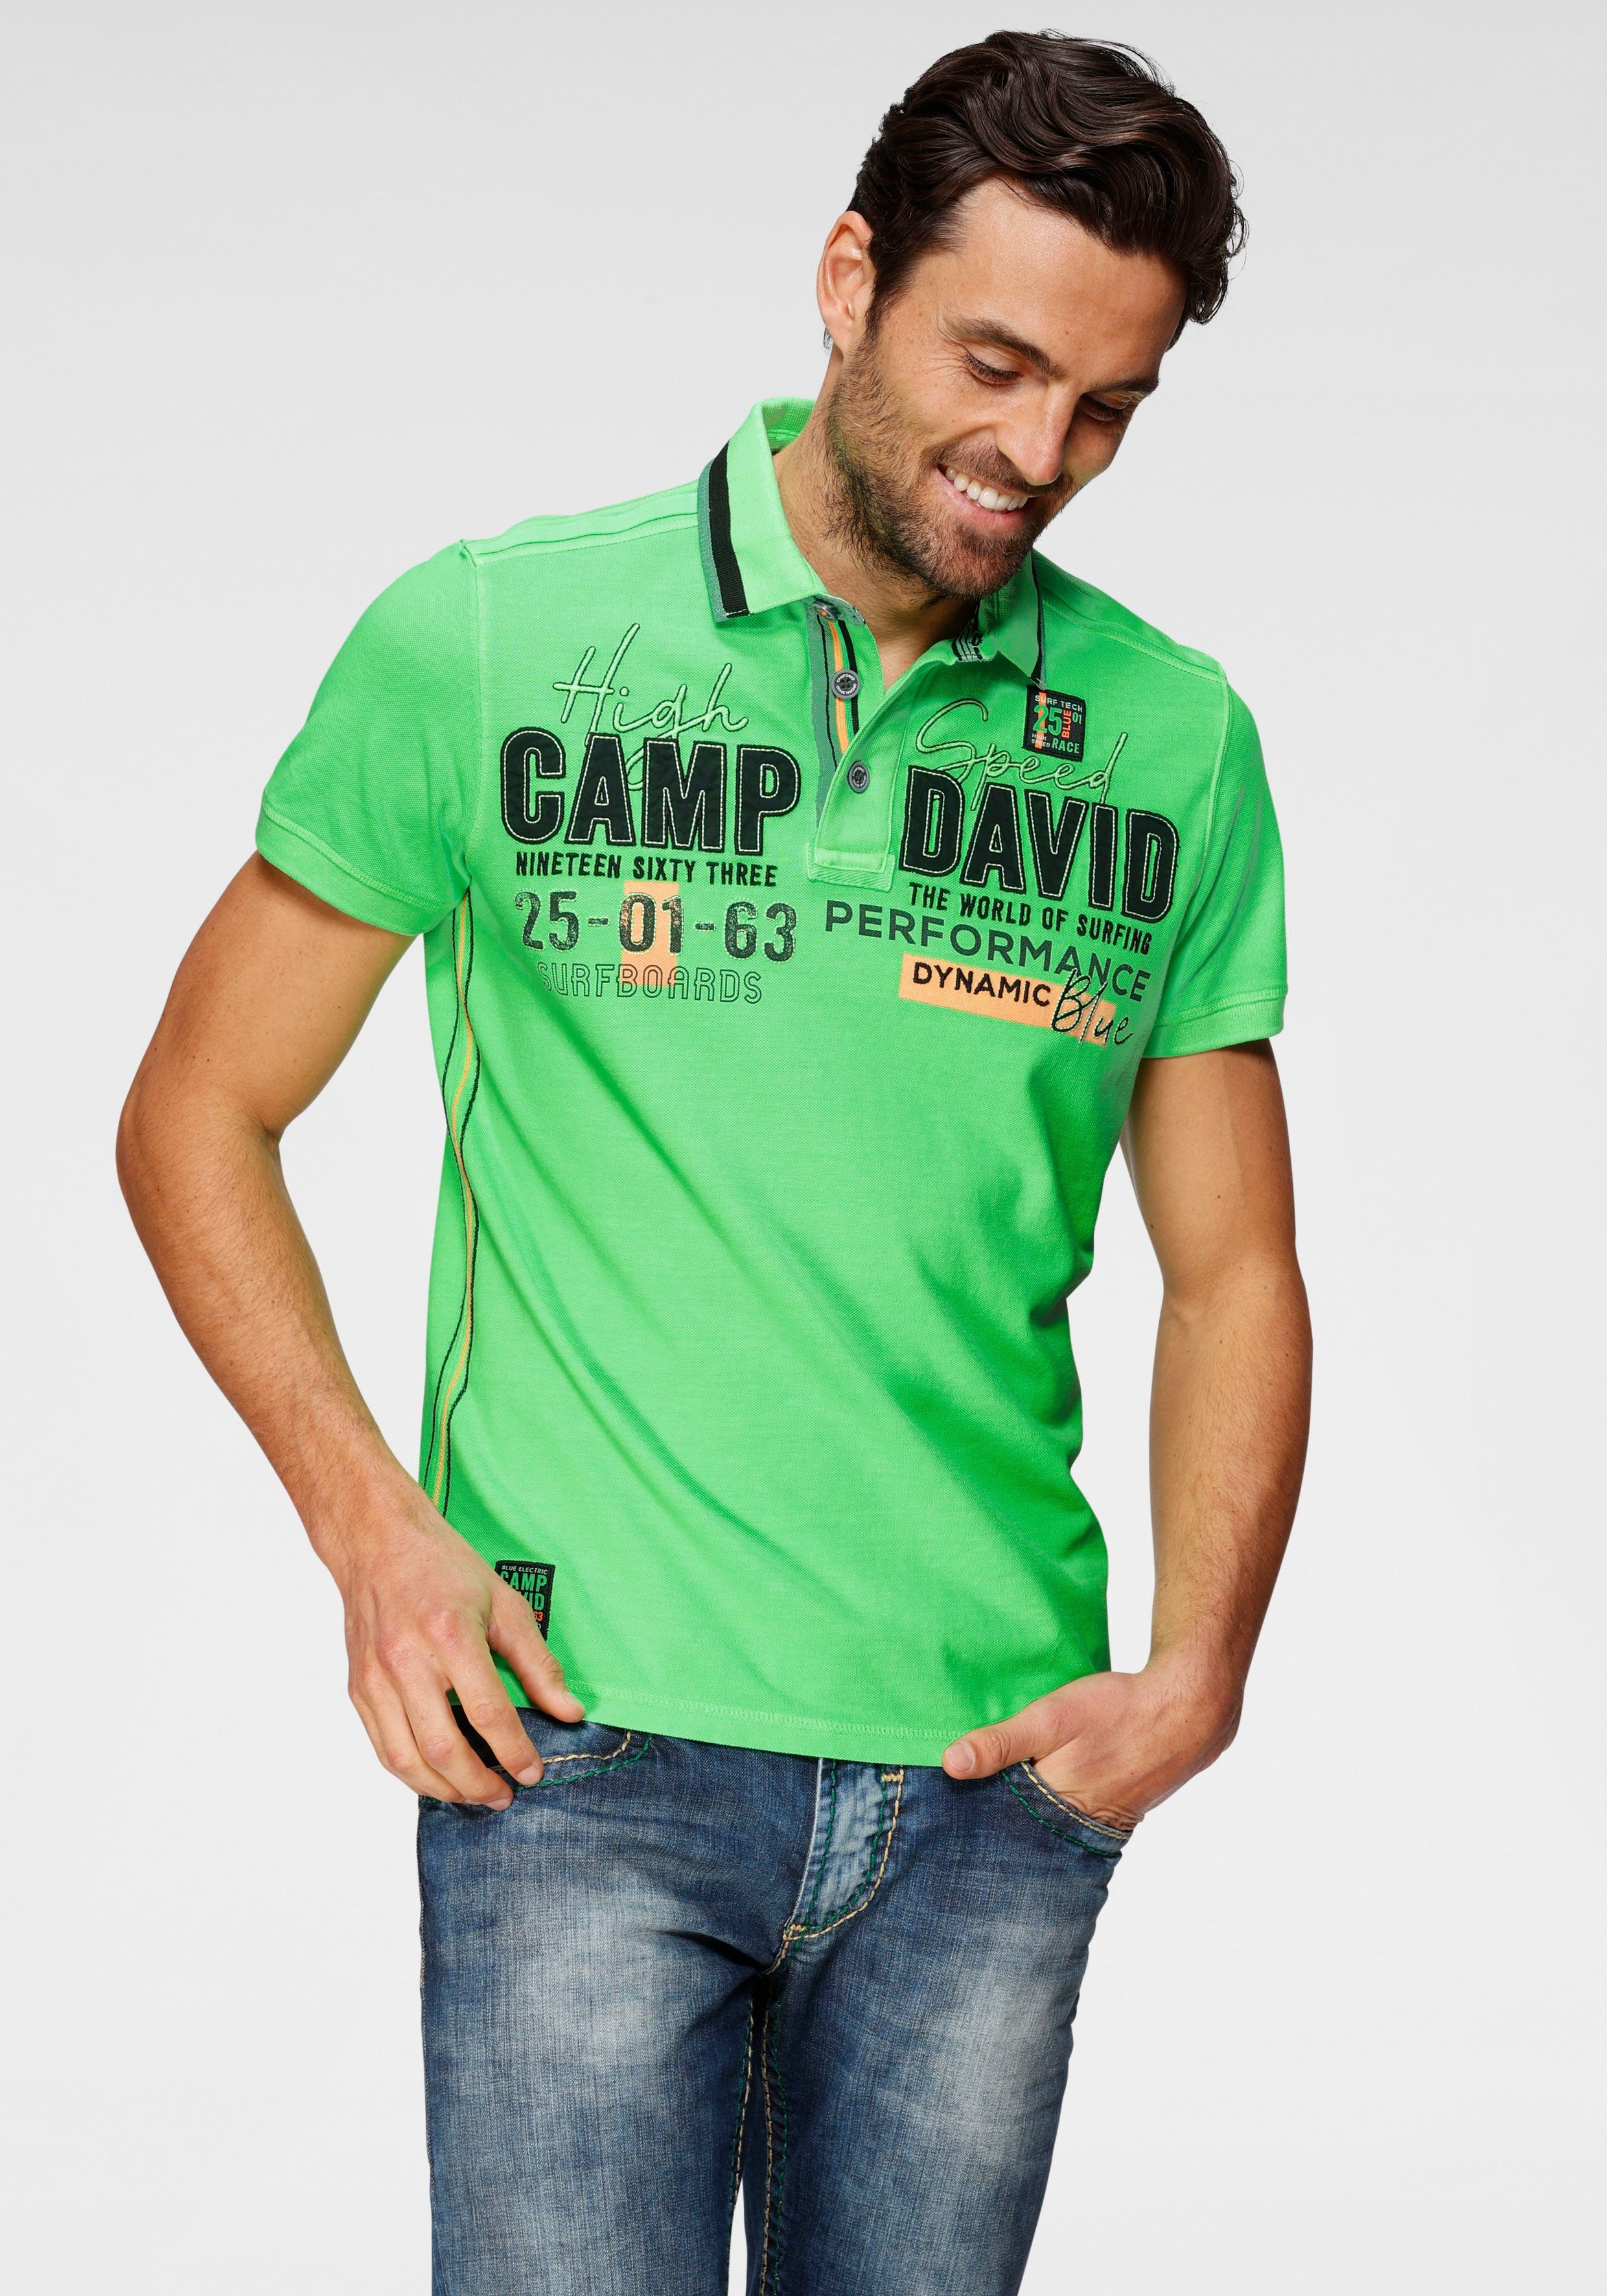 CAMP DAVID Poloshirt mit Logrofrontprint, Poloshirt von Camp David online  kaufen | OTTO